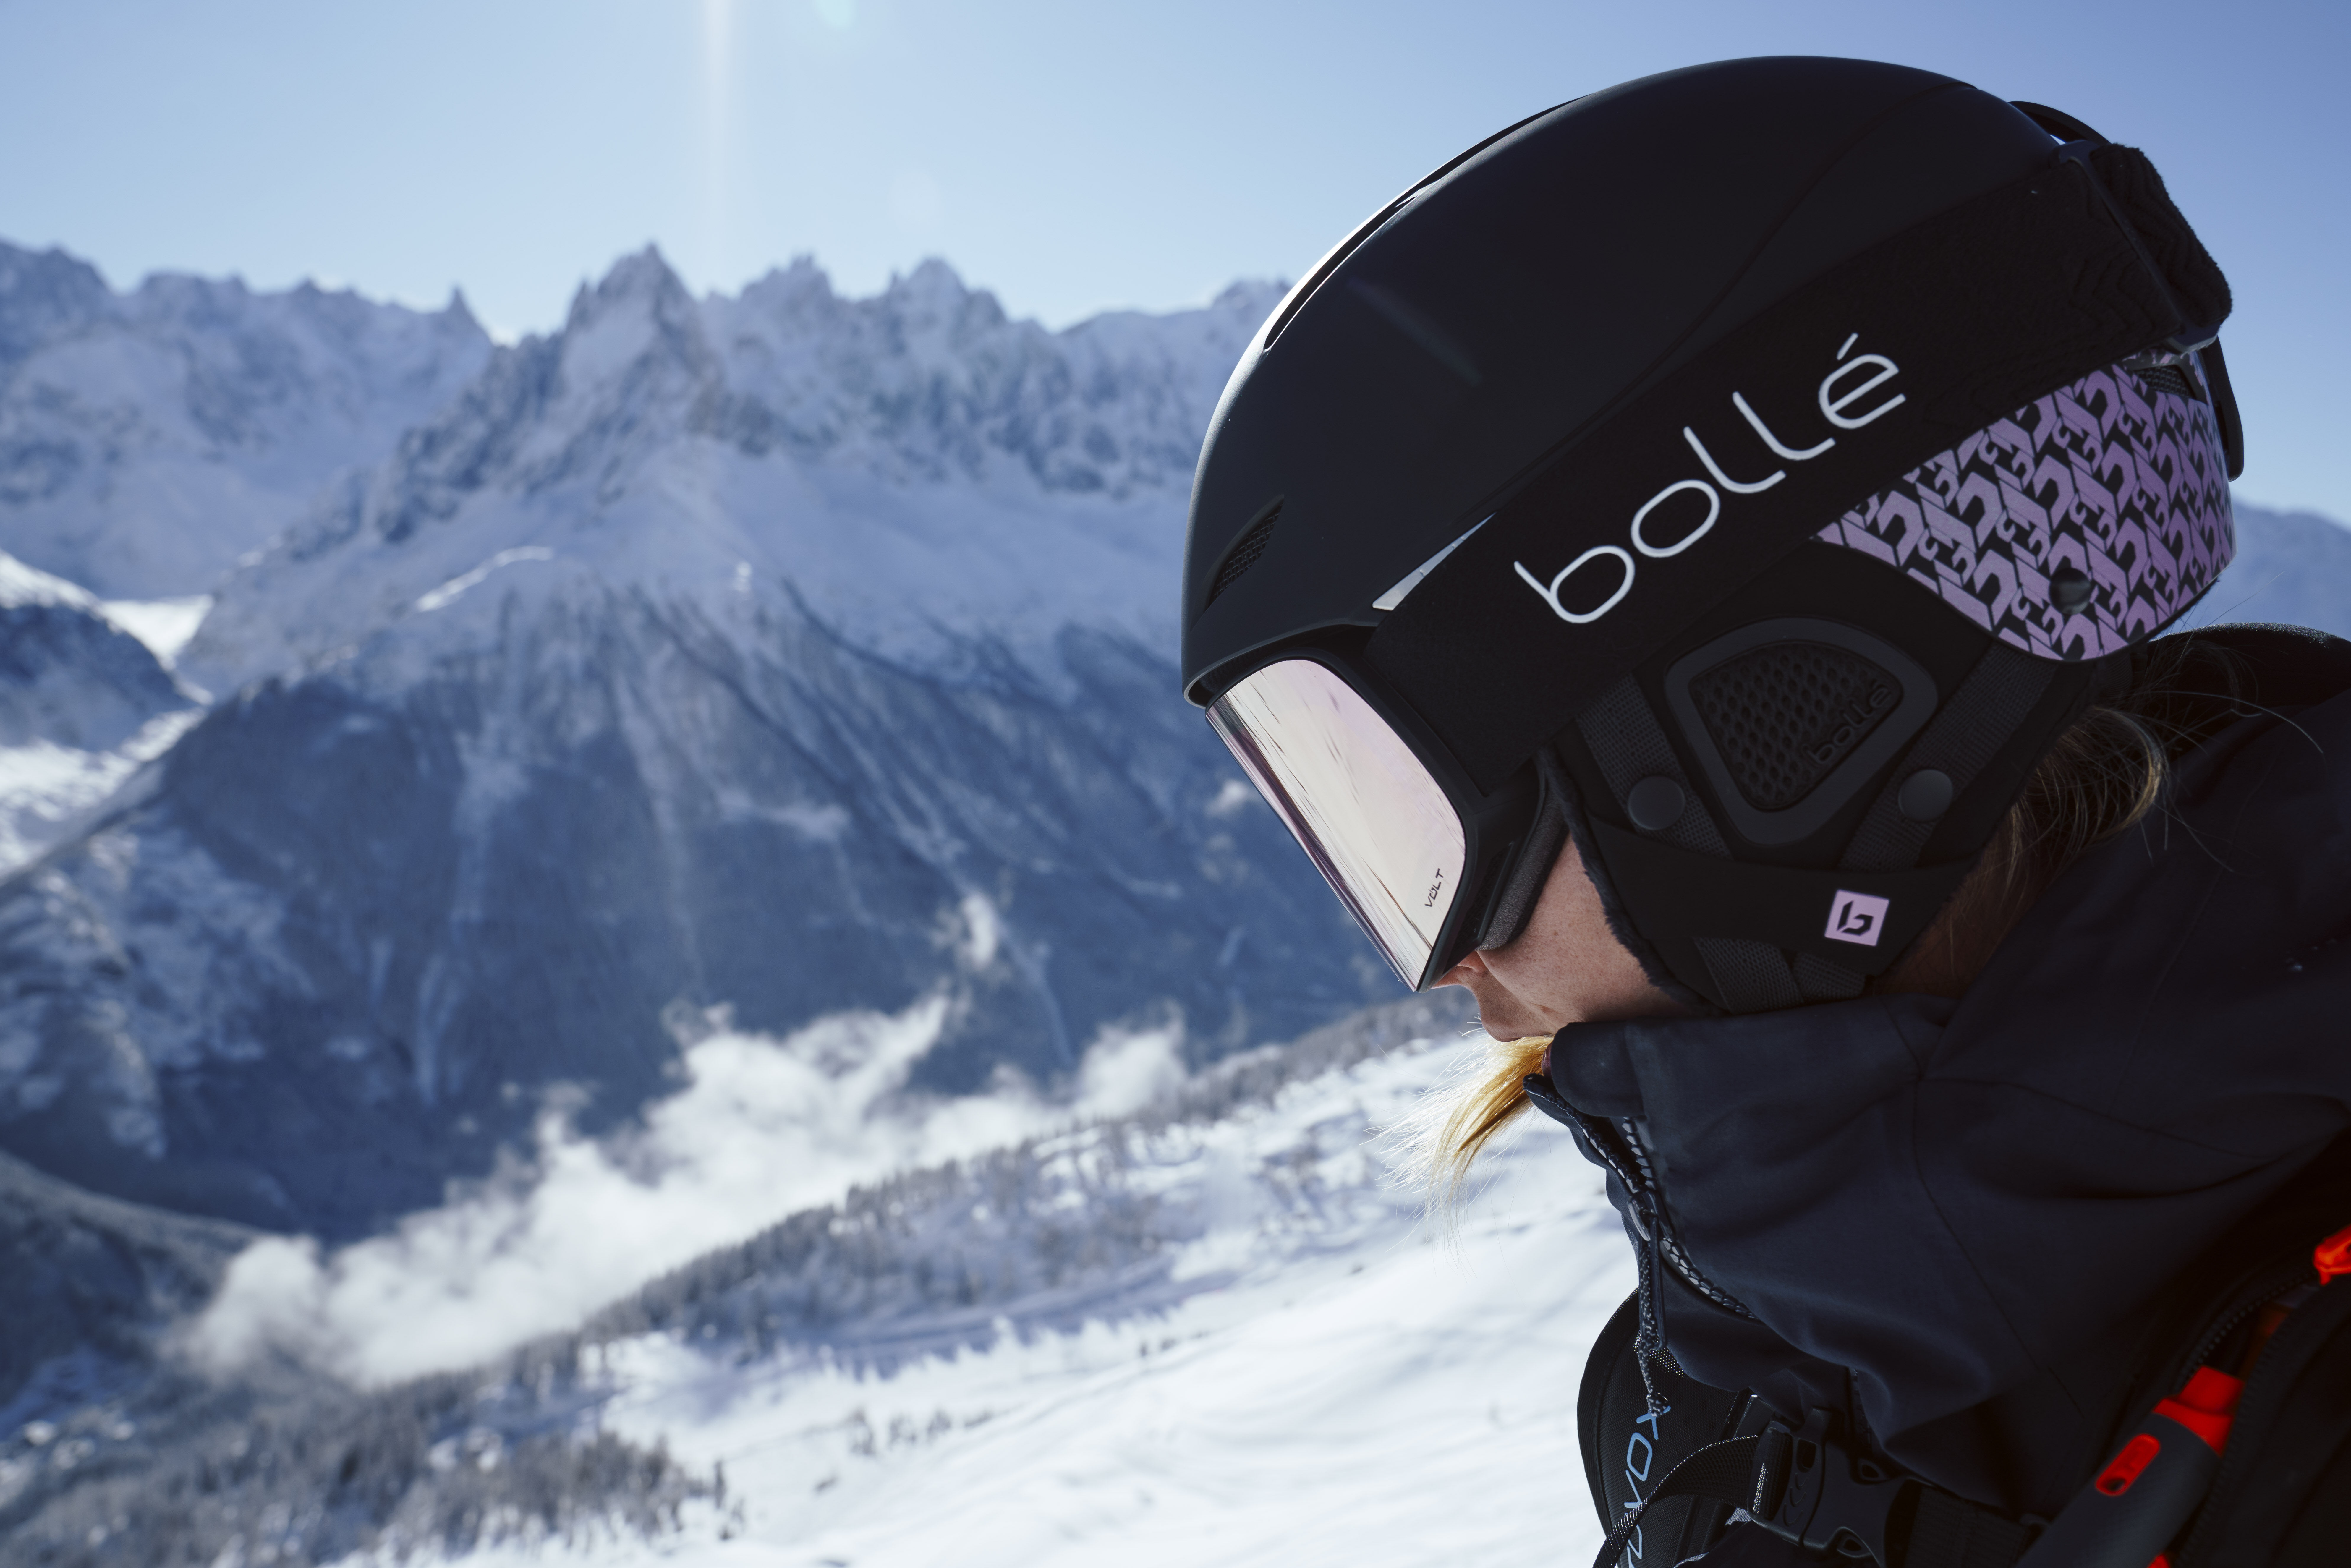 Masques de ski photochromique